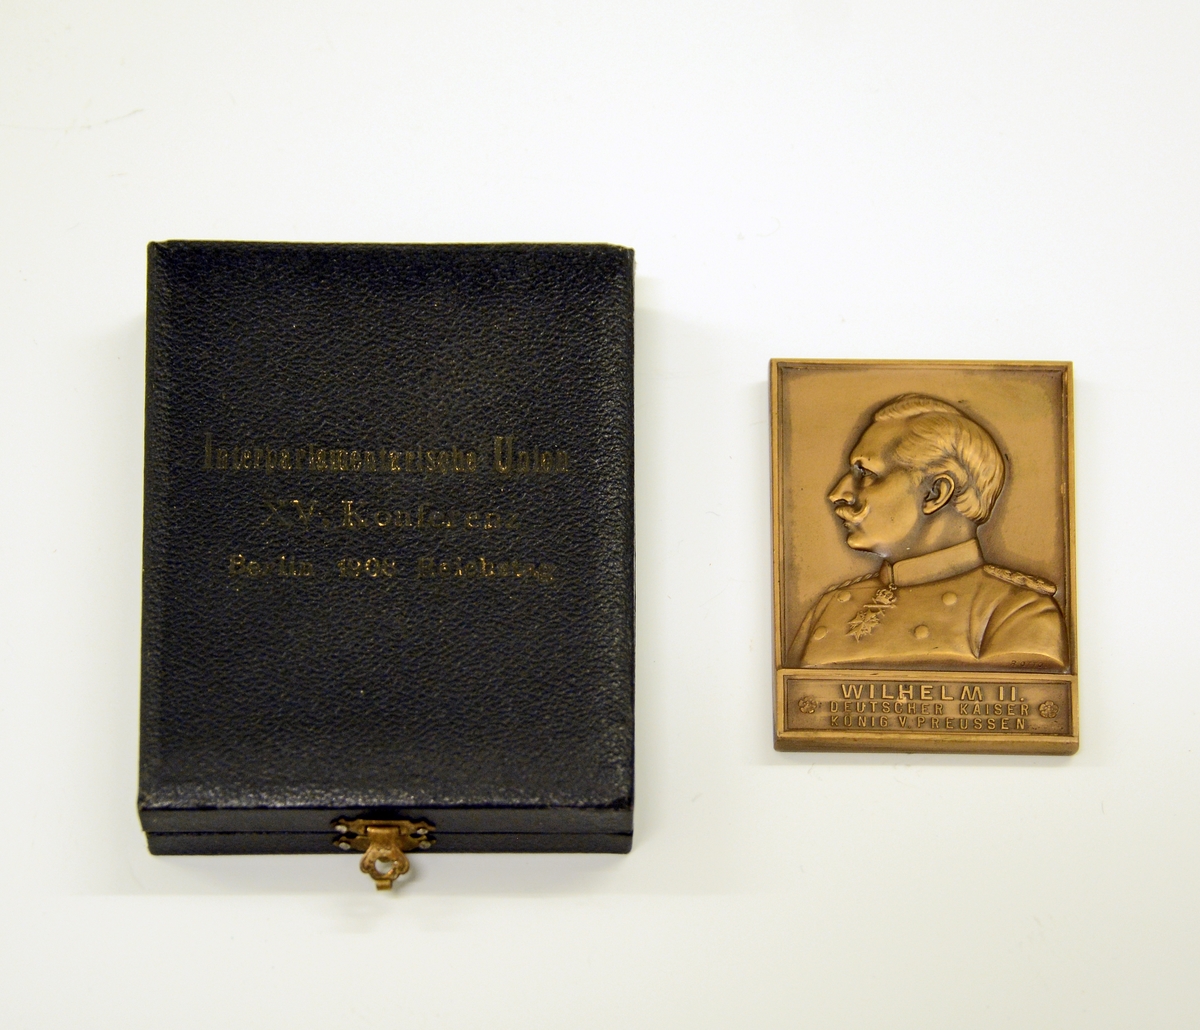 Fra protokollen: 
Plate i bronse, i etui. Platen er rektangulær, med målene 6,8 cm x 4,7 cm. På forsiden istøpt bilde av keiser Wilhelm II, hans navn og "DEUTSCHER KAISER KØNIG V. PREUSSEN" under bildet. På den andre siden bilde av en gudinne (?) som står med en globus under hvert ben, i venstre hånd en dokumentrull med ordet "PAX" på, i høyre holder hun en plantegren. Rundt figuren står følgende:   "+ 15. KONFERENTZ - DER - INTERPARLAMENTARISCHEN - UNION +". 
Ved siden av figuren: "Berlin 1908" "Reichstag".
Etuiet har sort imitert skinntrekk og på forsiden står: "Interparlamentarische Union XV. Konferentz. Berlin 1908. Reichstag". På innsiden av lokket foret med grønn silke. I gullbokstaver står: "R. OTTO. Kgl. Hofgraveur. Berlin. U. d. Linden 40." Bunnen er innvendig trukket med mørk grønn fløyel.